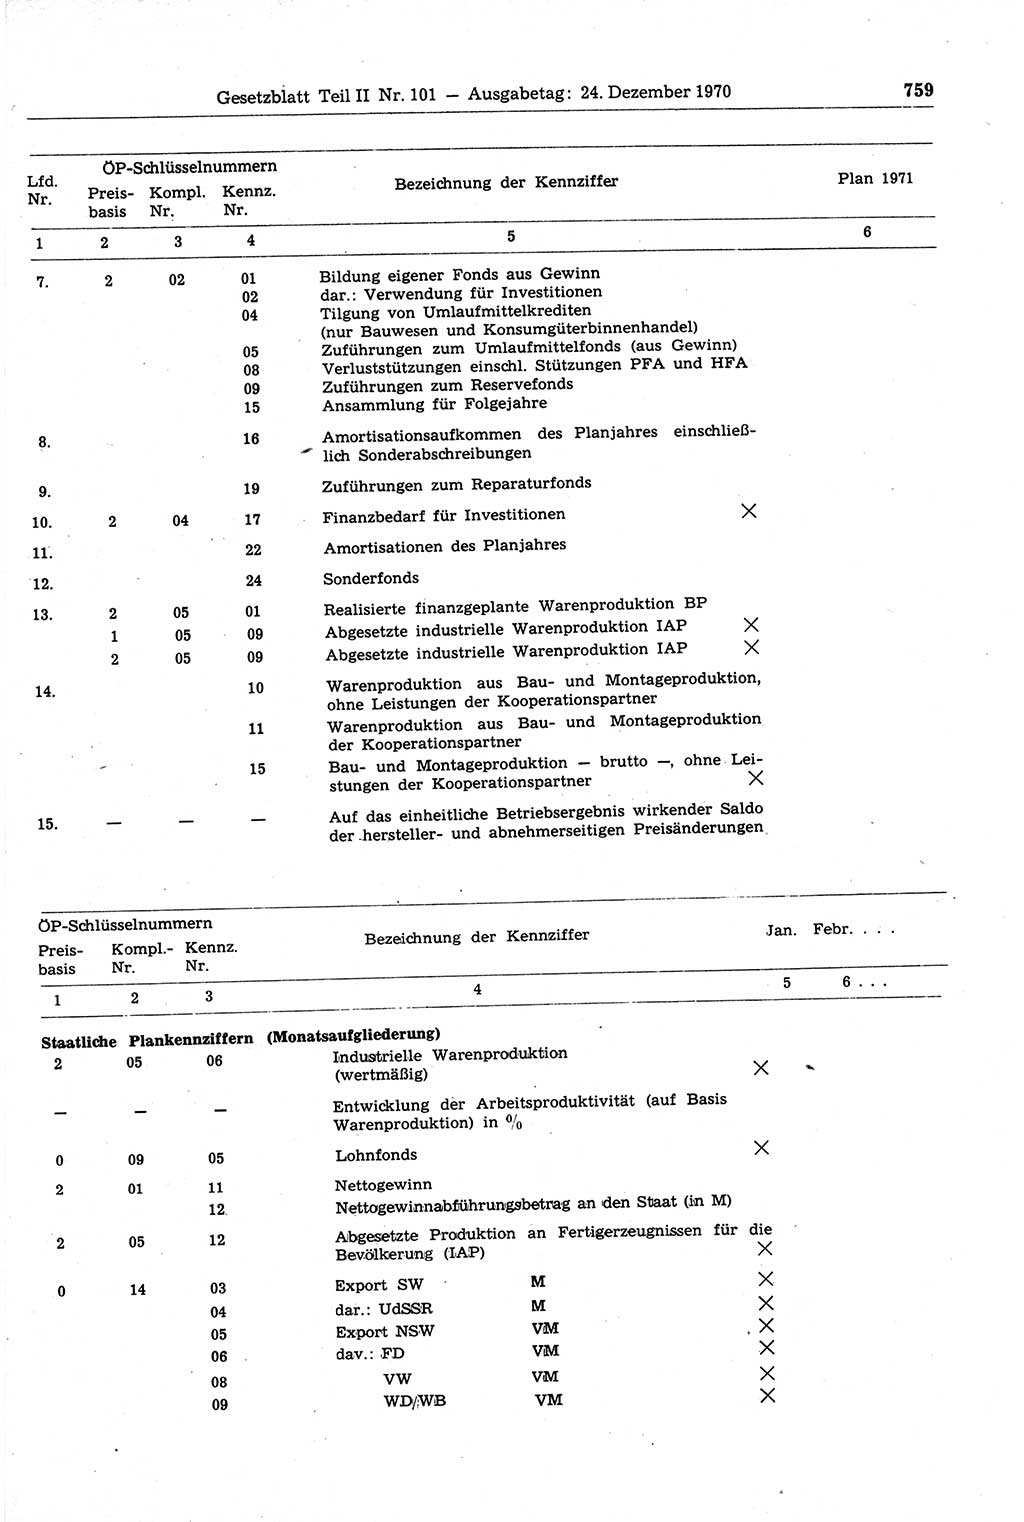 Gesetzblatt (GBl.) der Deutschen Demokratischen Republik (DDR) Teil ⅠⅠ 1970, Seite 759 (GBl. DDR ⅠⅠ 1970, S. 759)